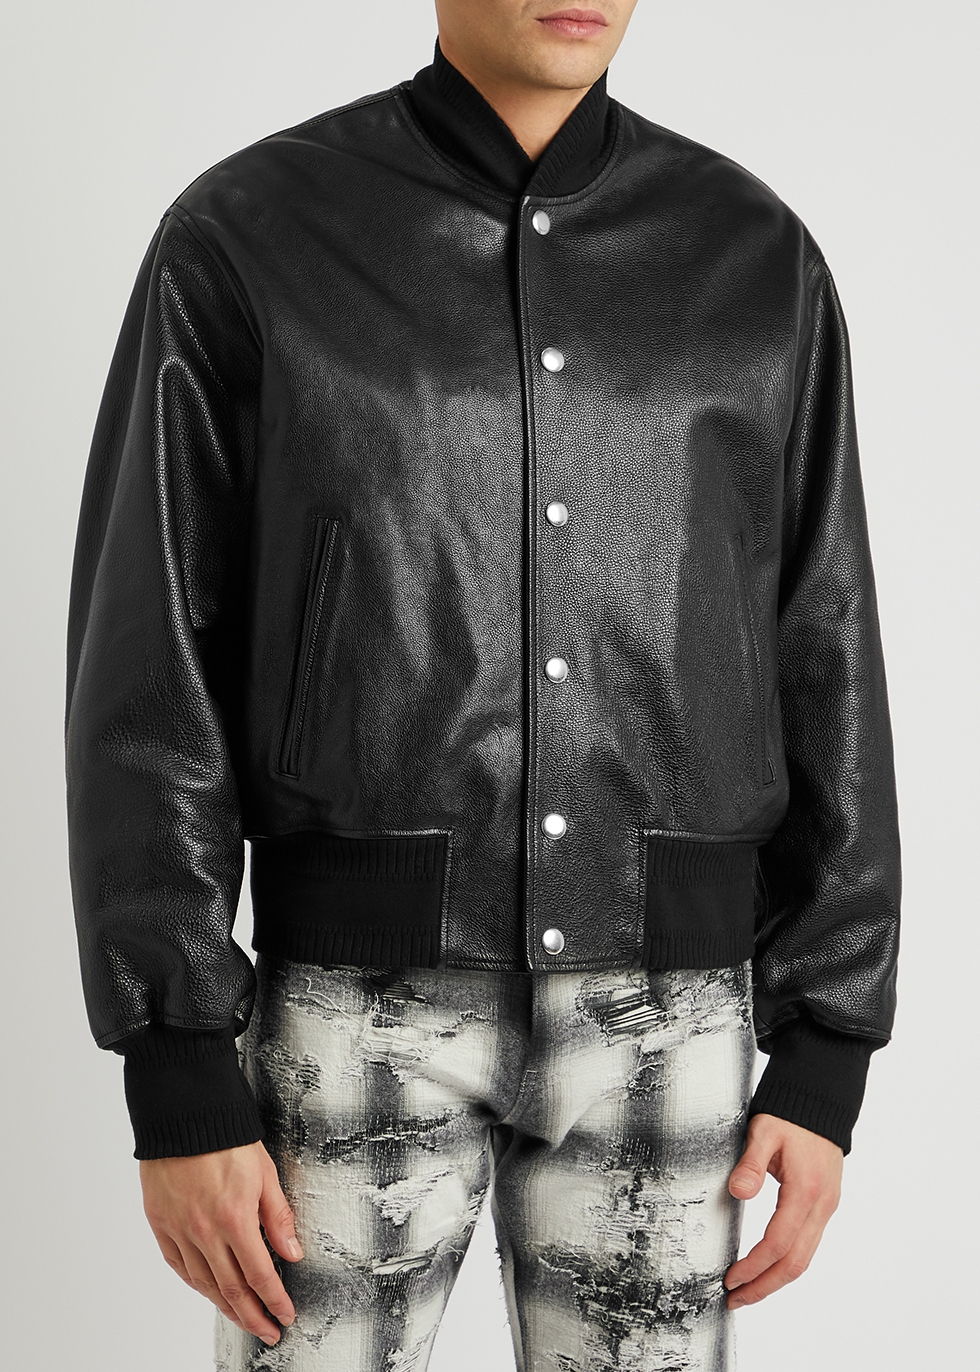 Givenchy Black logo leather varsity jacket - Harvey Nichols